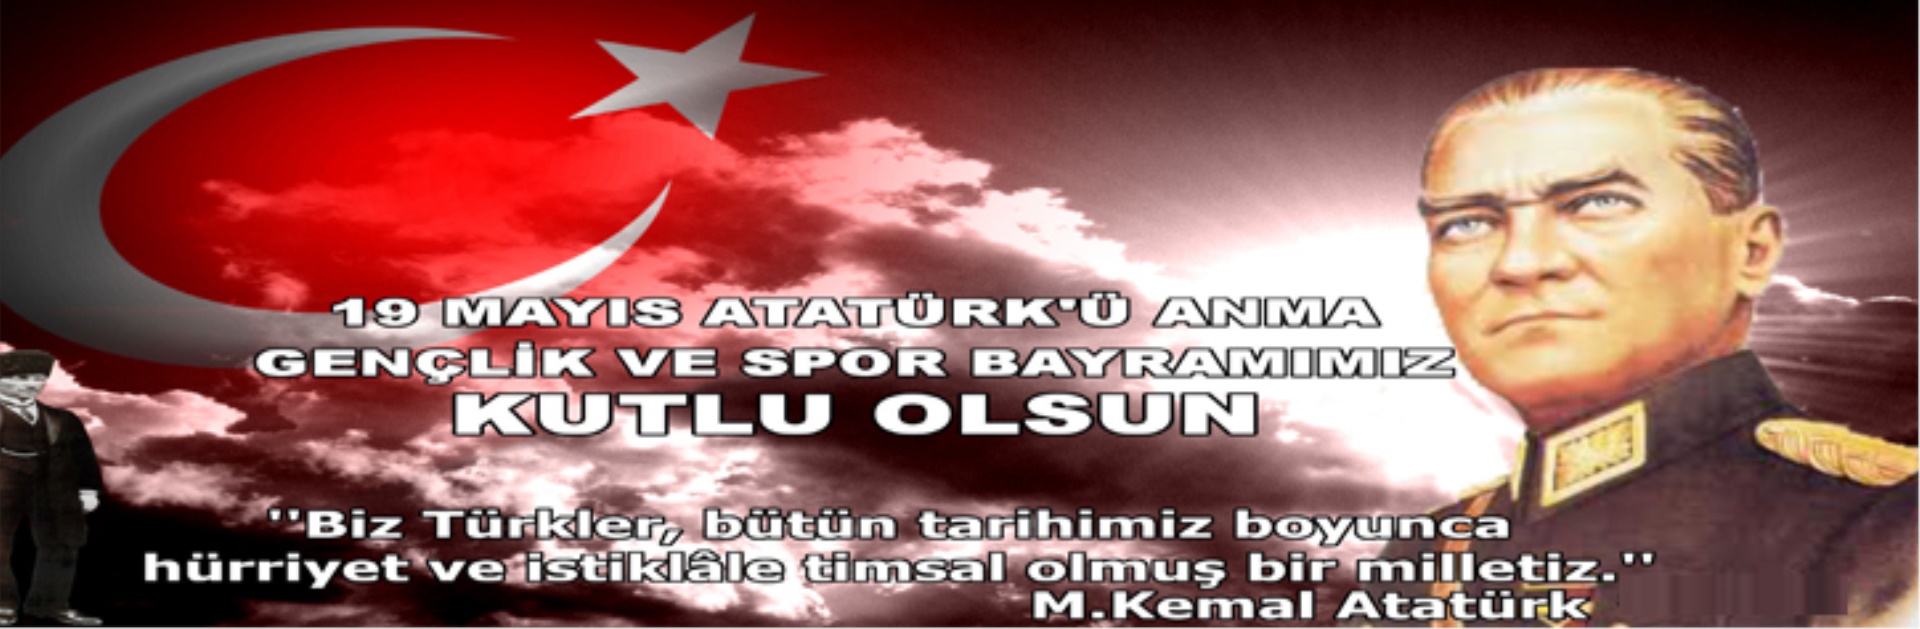 19 Mayıs Atatürk'ü Anma ve Gençlik Gençlik ve Spor Bayramı Kutlama Mesajı